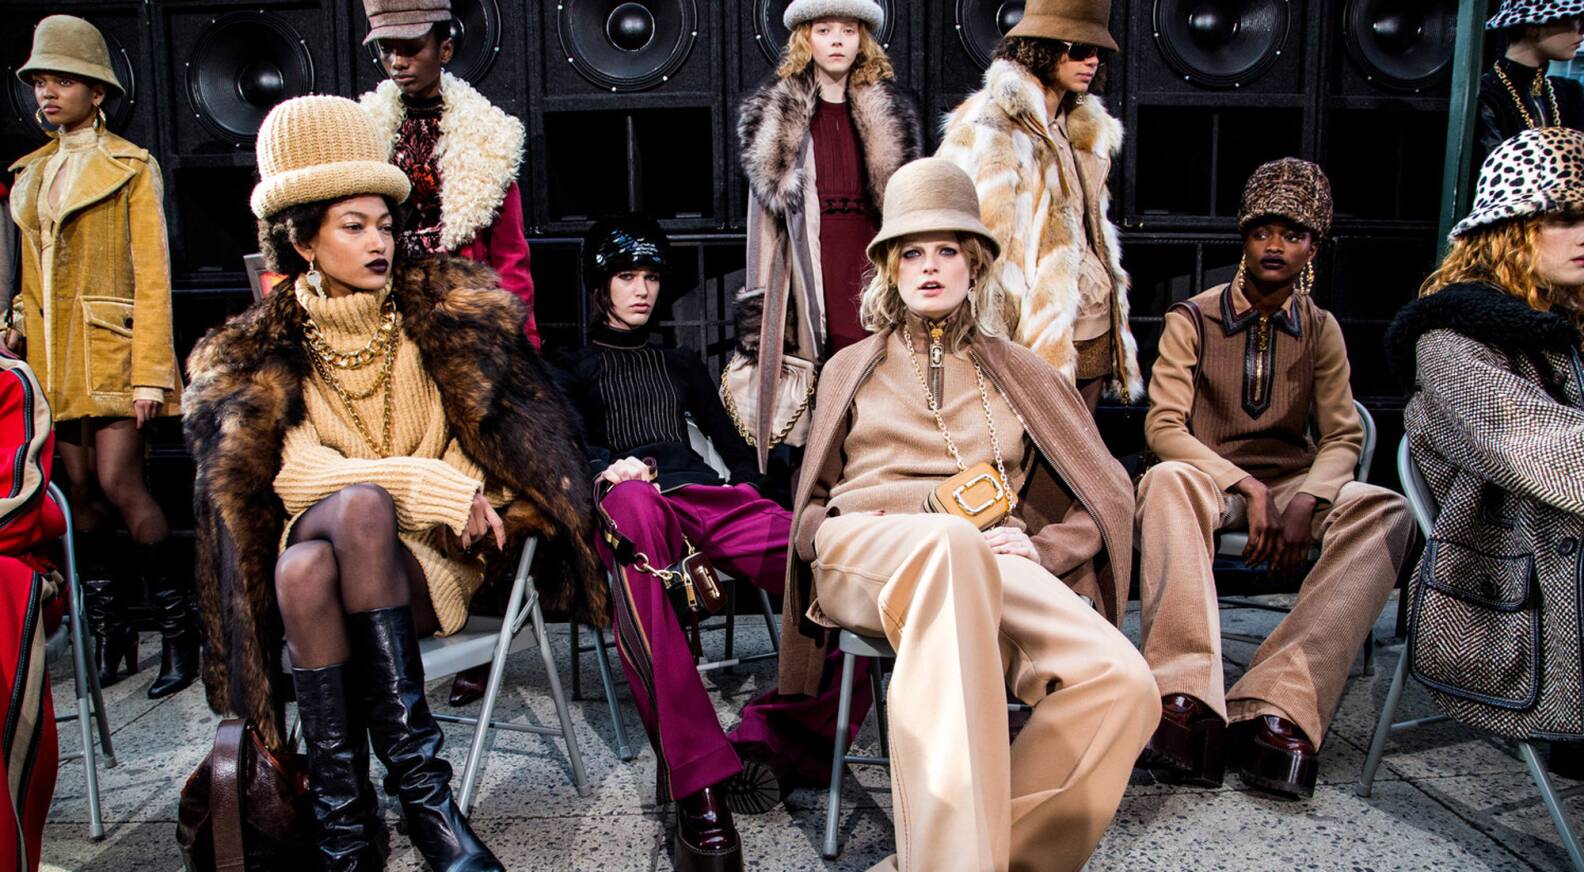 Marc Jacobs unveils new Louis Vuitton collection at Paris Fashion